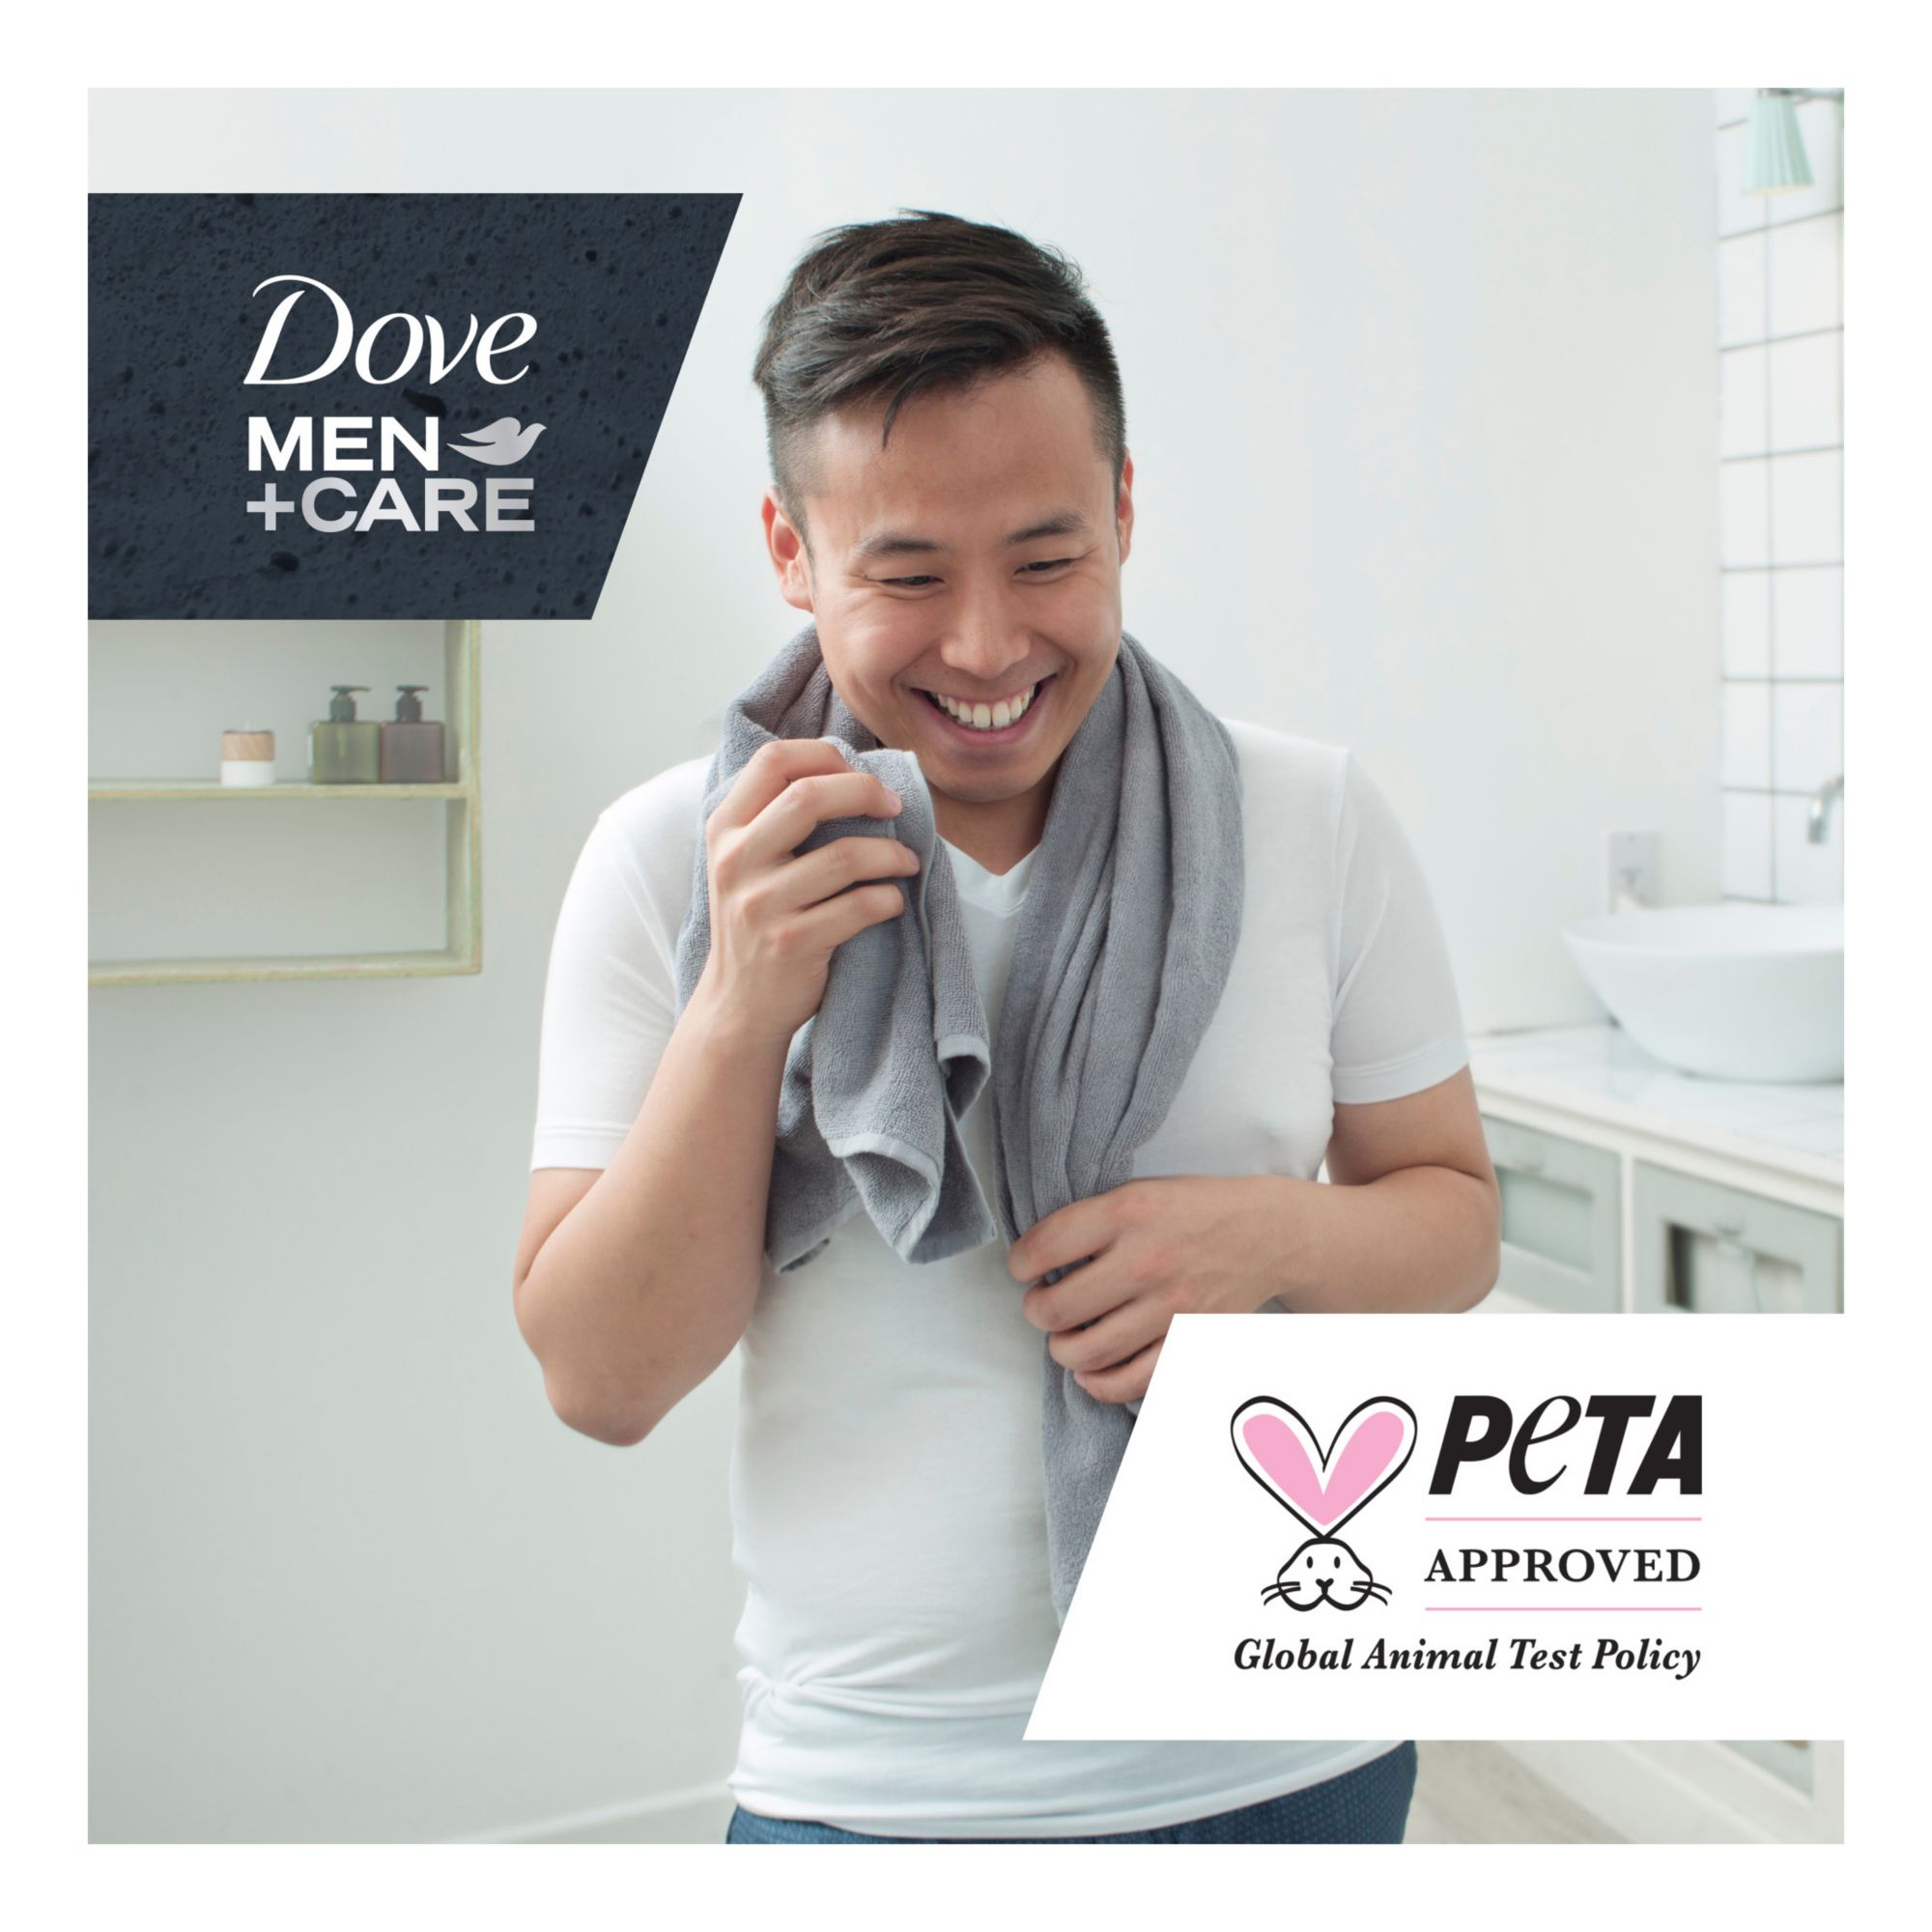 Dove Men+Care Body and Face Bar, Extra Fresh, 2.6 oz.